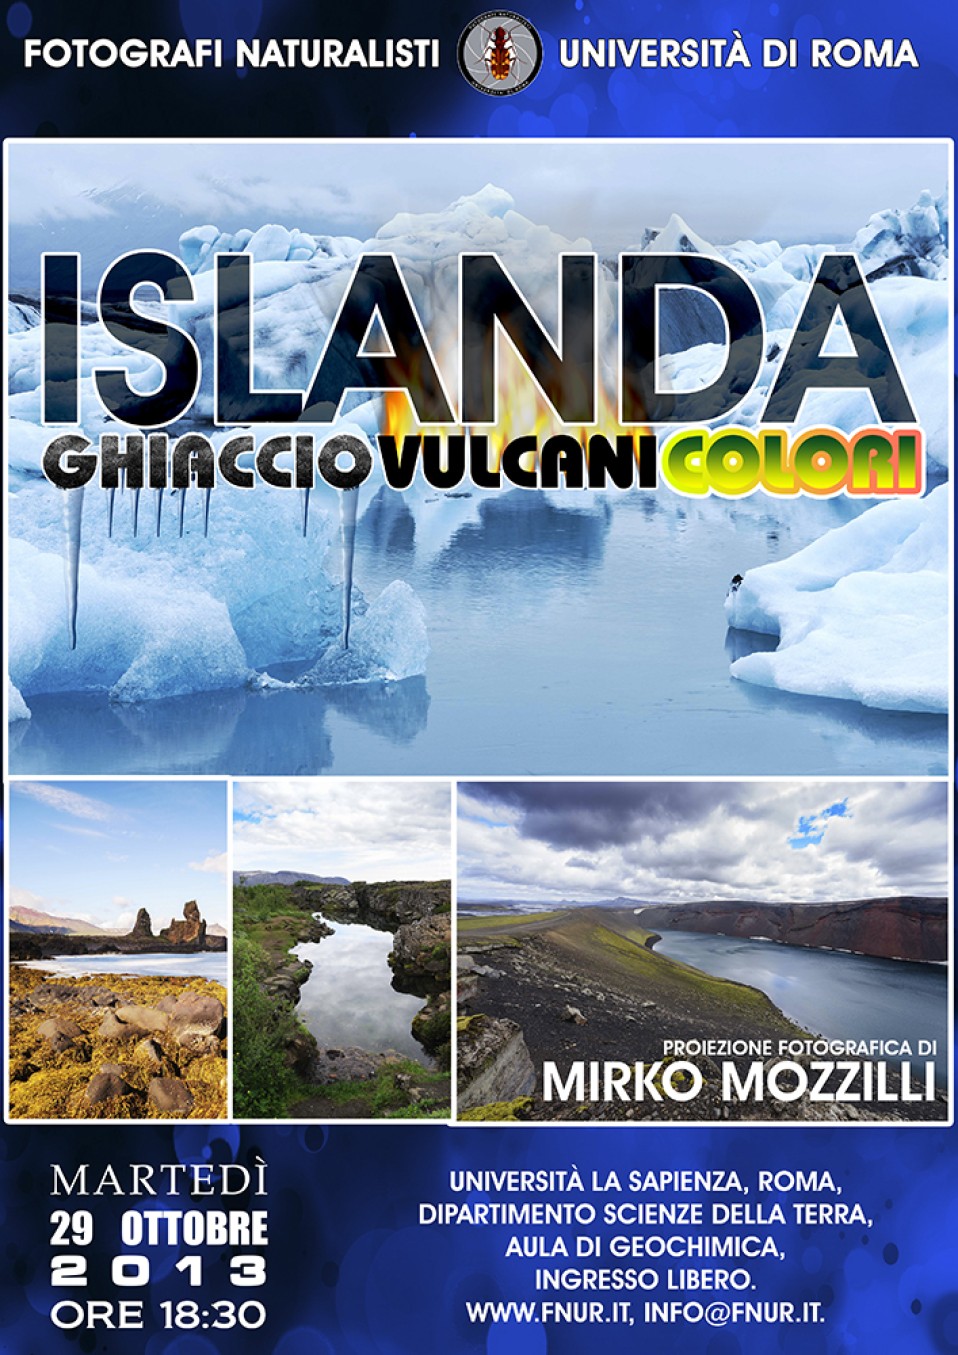 Islanda. Ghiaccio, vulcani, colori – 29 ottobre 2013